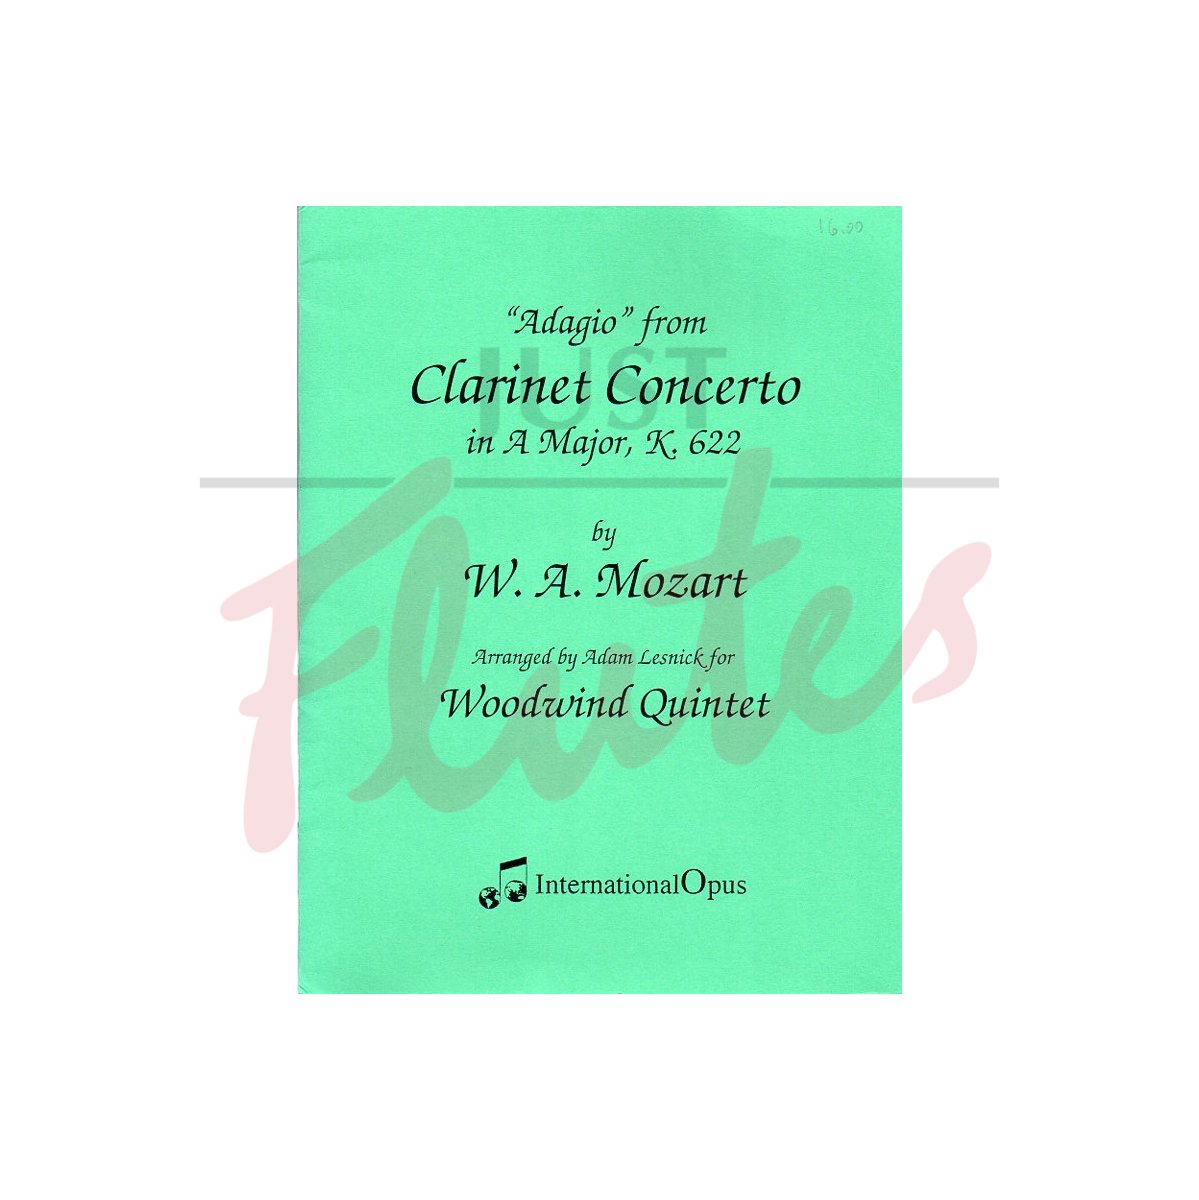 Adagio from Clarinet Concerto arranged for Wind Quintet